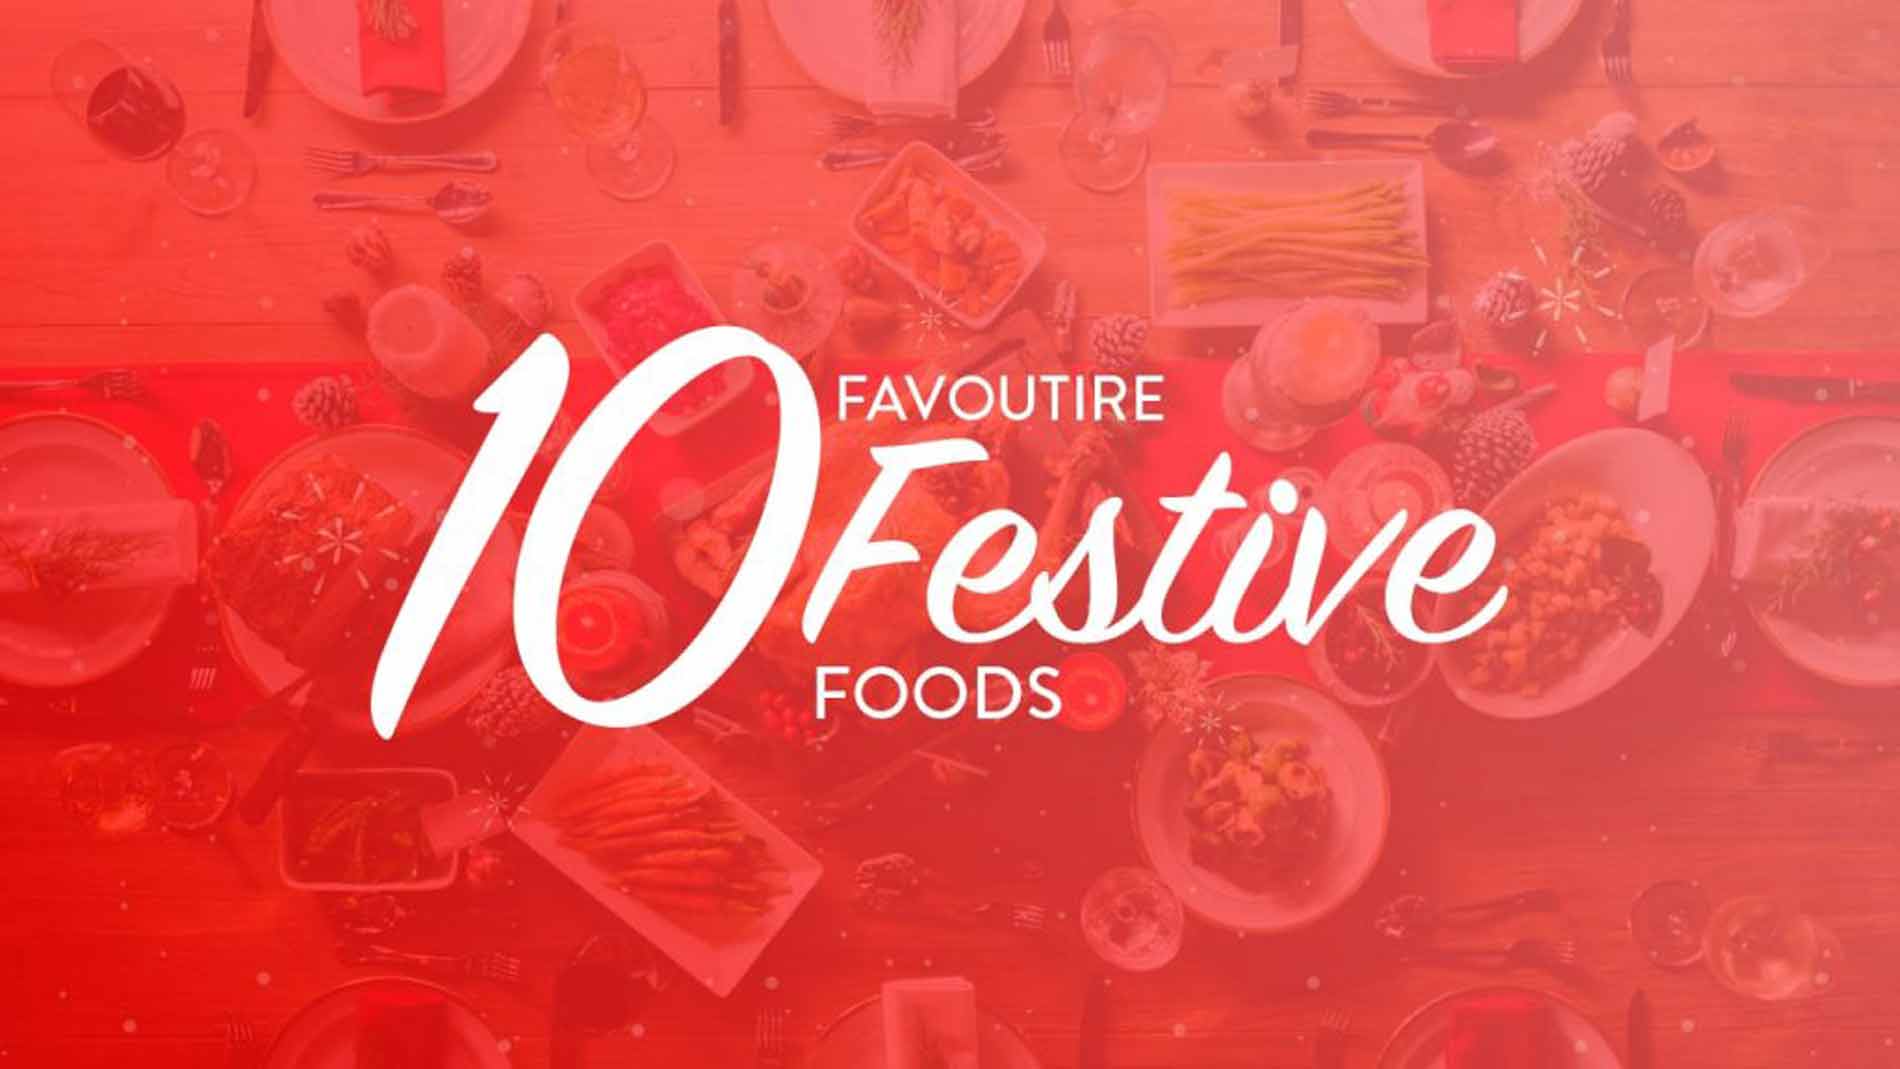 10 Favourite Festive Foods